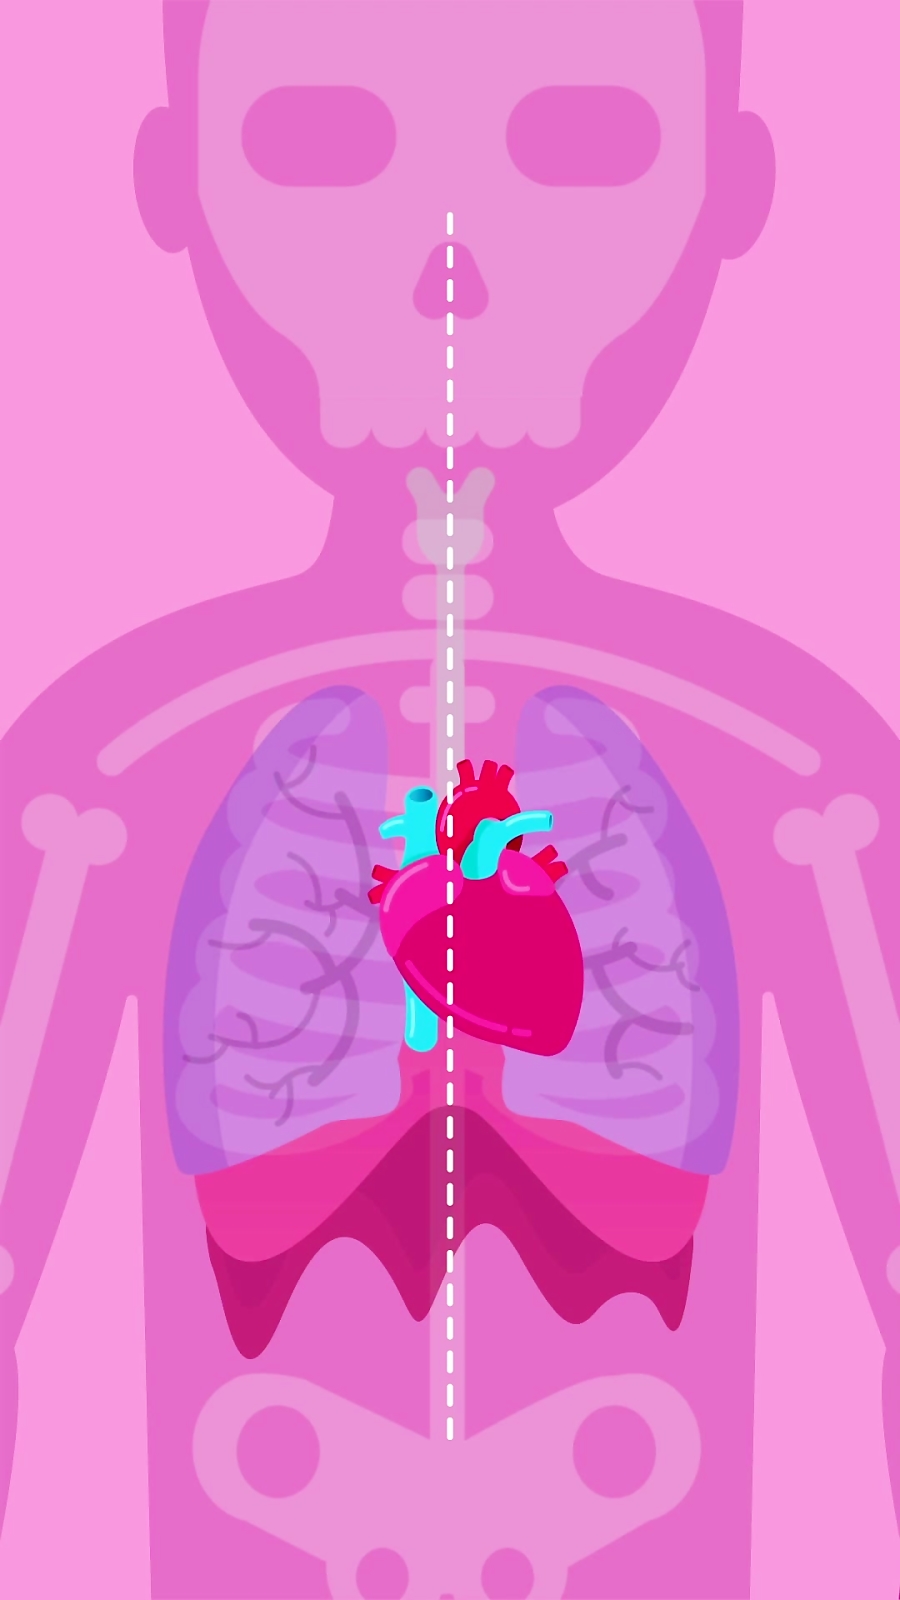 قلب و رگ های خونی: قسمت 1 - معرفی ساختار و آناتومی قلب زمان563ثانیه